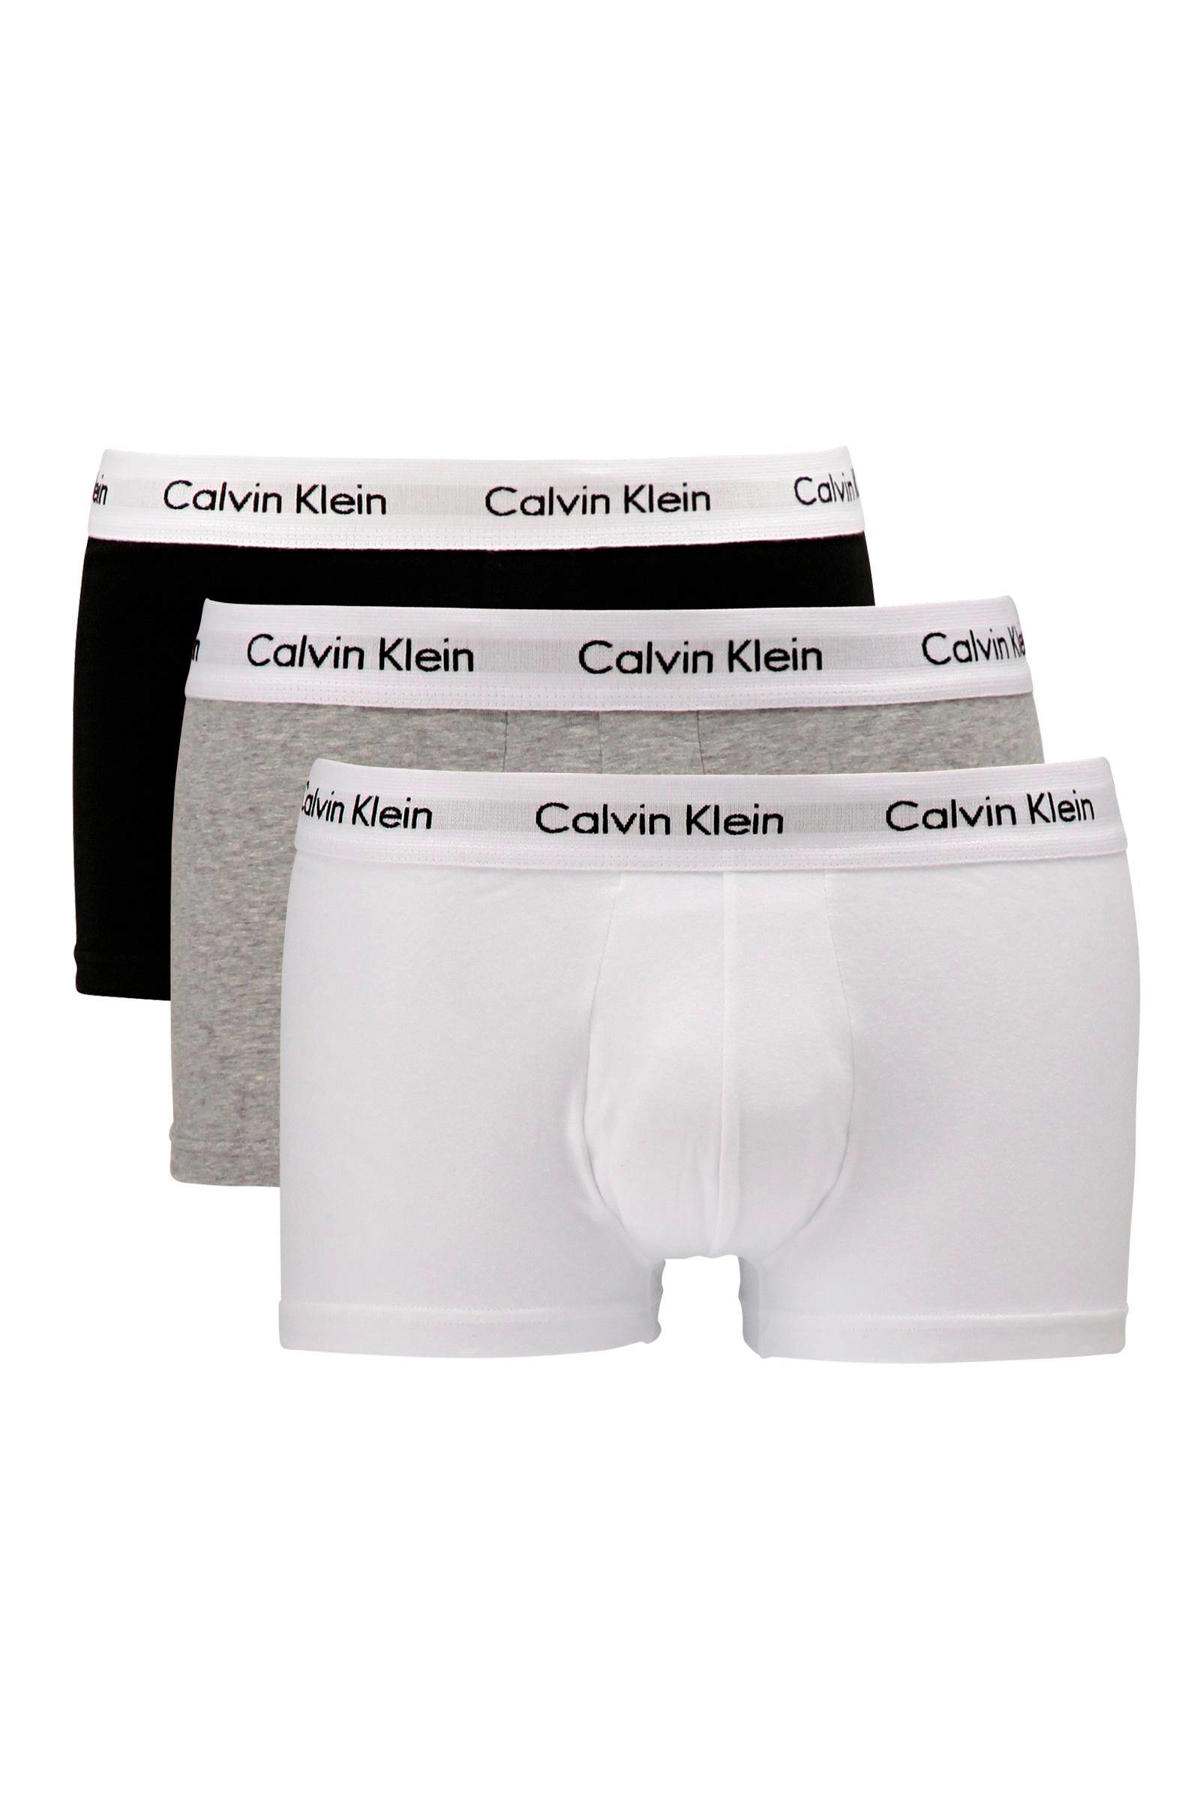 Guggenheim Museum hier volwassen CALVIN KLEIN UNDERWEAR boxershort (set van 3) | wehkamp